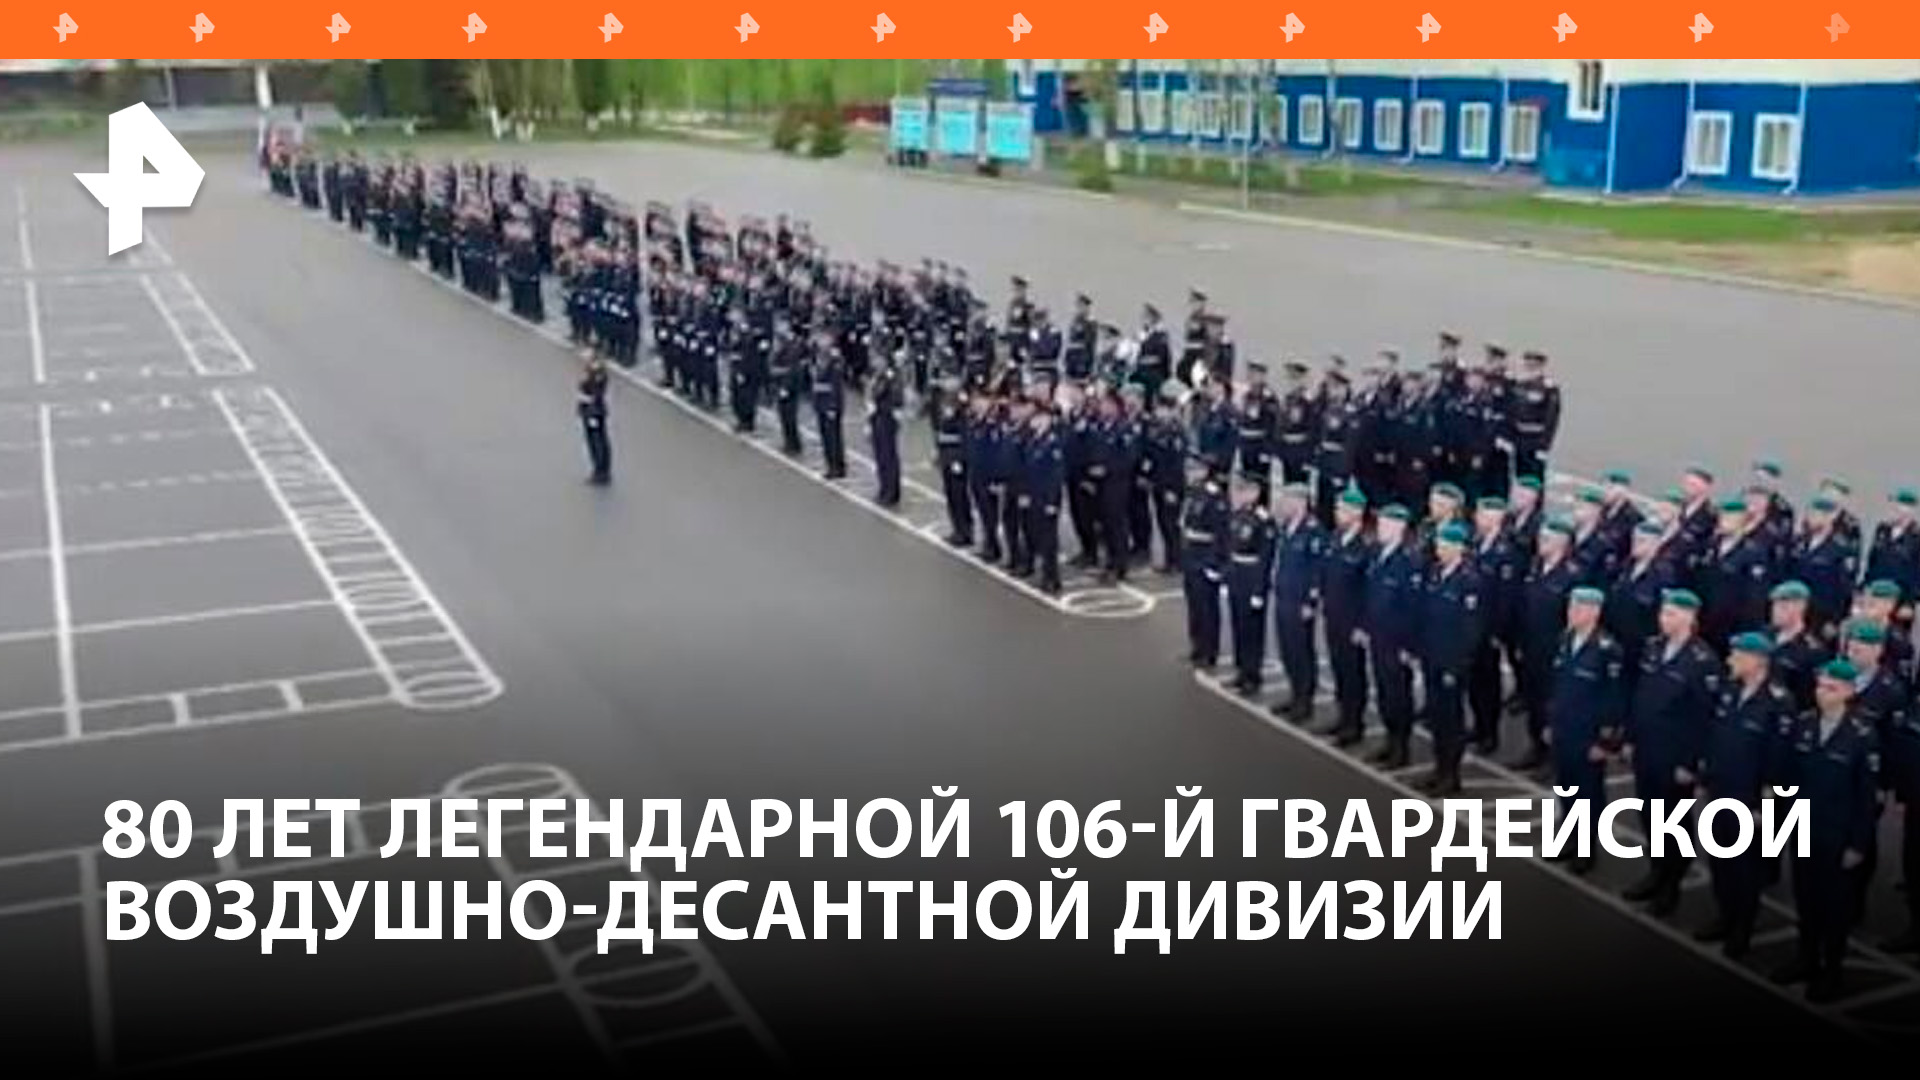 Легендарная 106-я гвардейская воздушно-десантная дивизия отмечает свое 80-летие / РЕН Новости